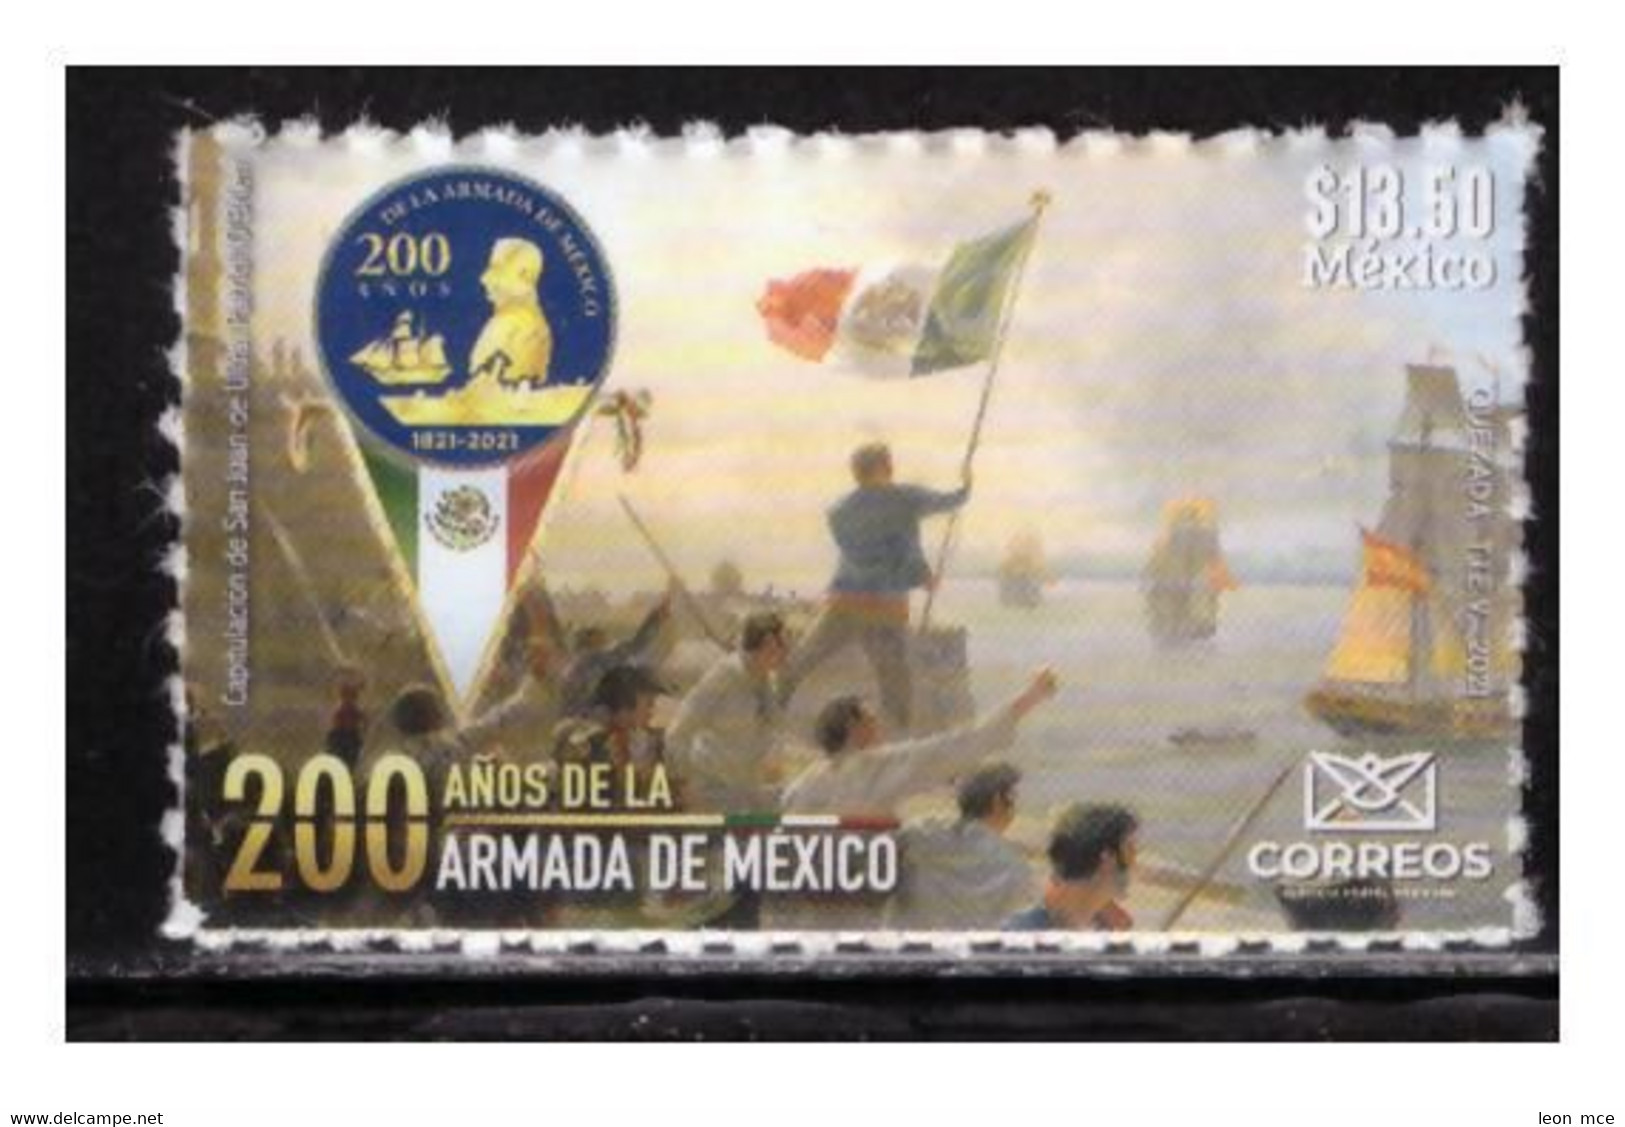 2021 MÉXICO 200 Años De La Armada De México MNH 200 Years Of The Mexican Navy  SELF-ADHERIBLE SEAL, FLAG, BOATS - Mexiko